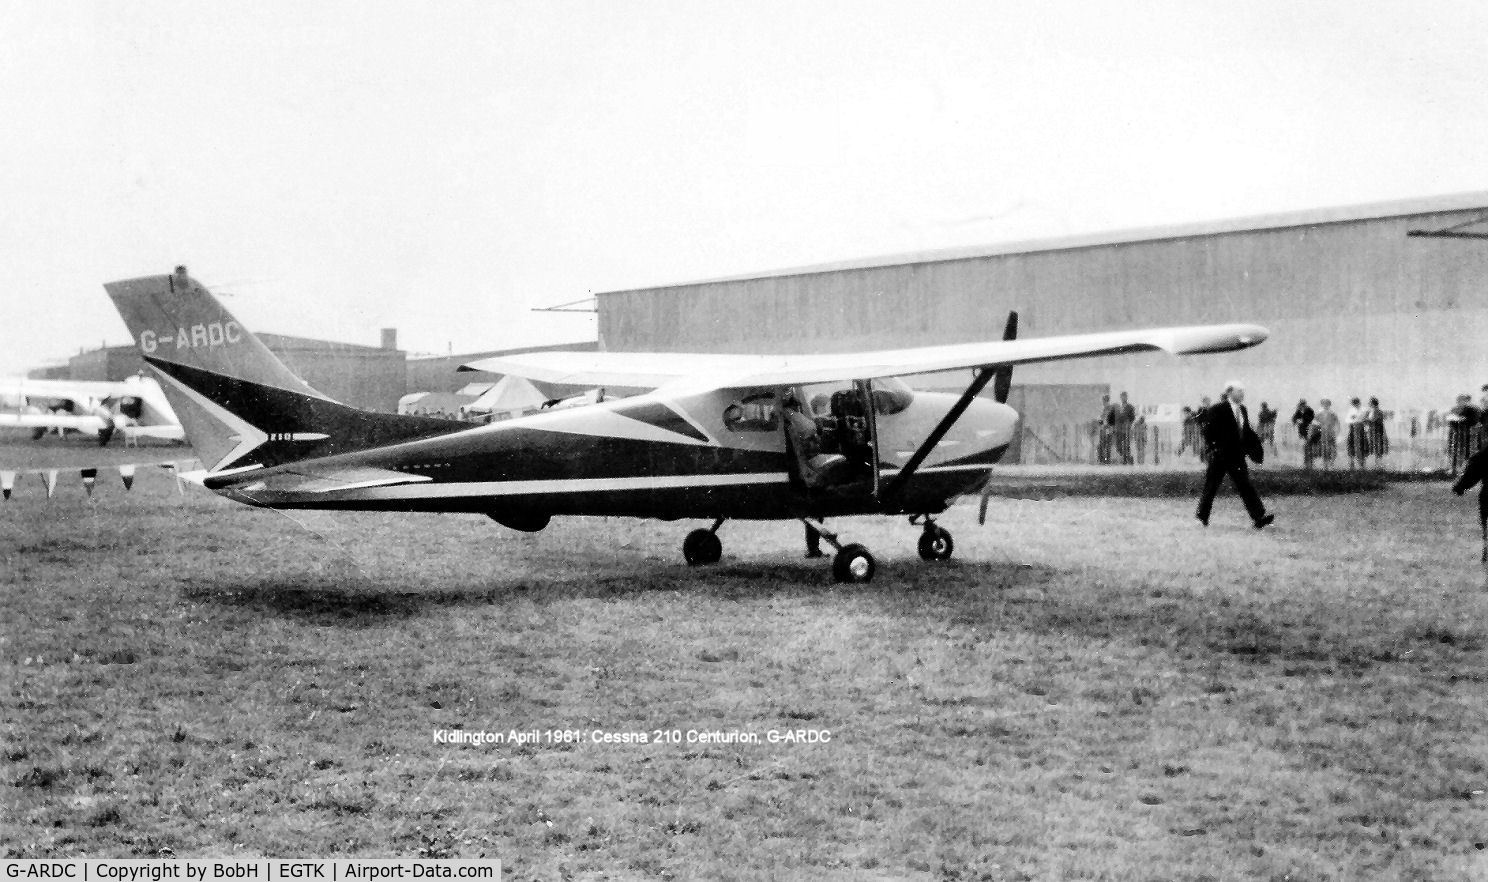 G-ARDC, 1960 Cessna 210 C/N 57007, G-ARDC at Kidlington in April 1961.